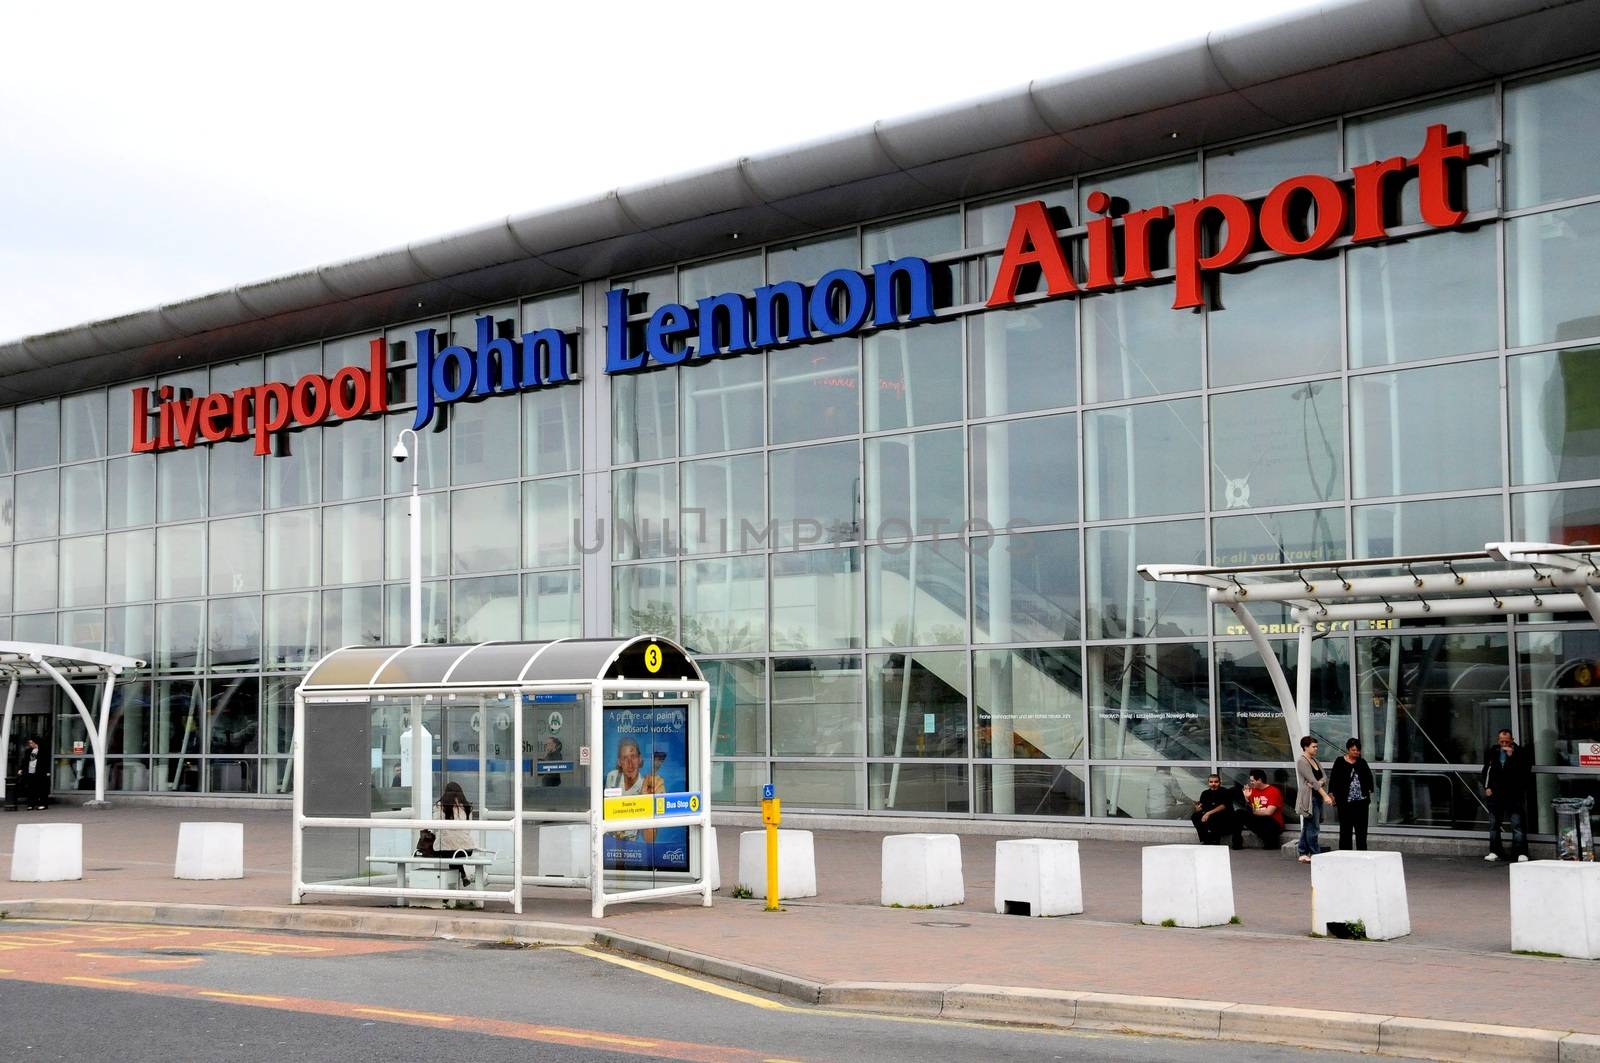 Liverpool airport renamed in honour of John Lennon